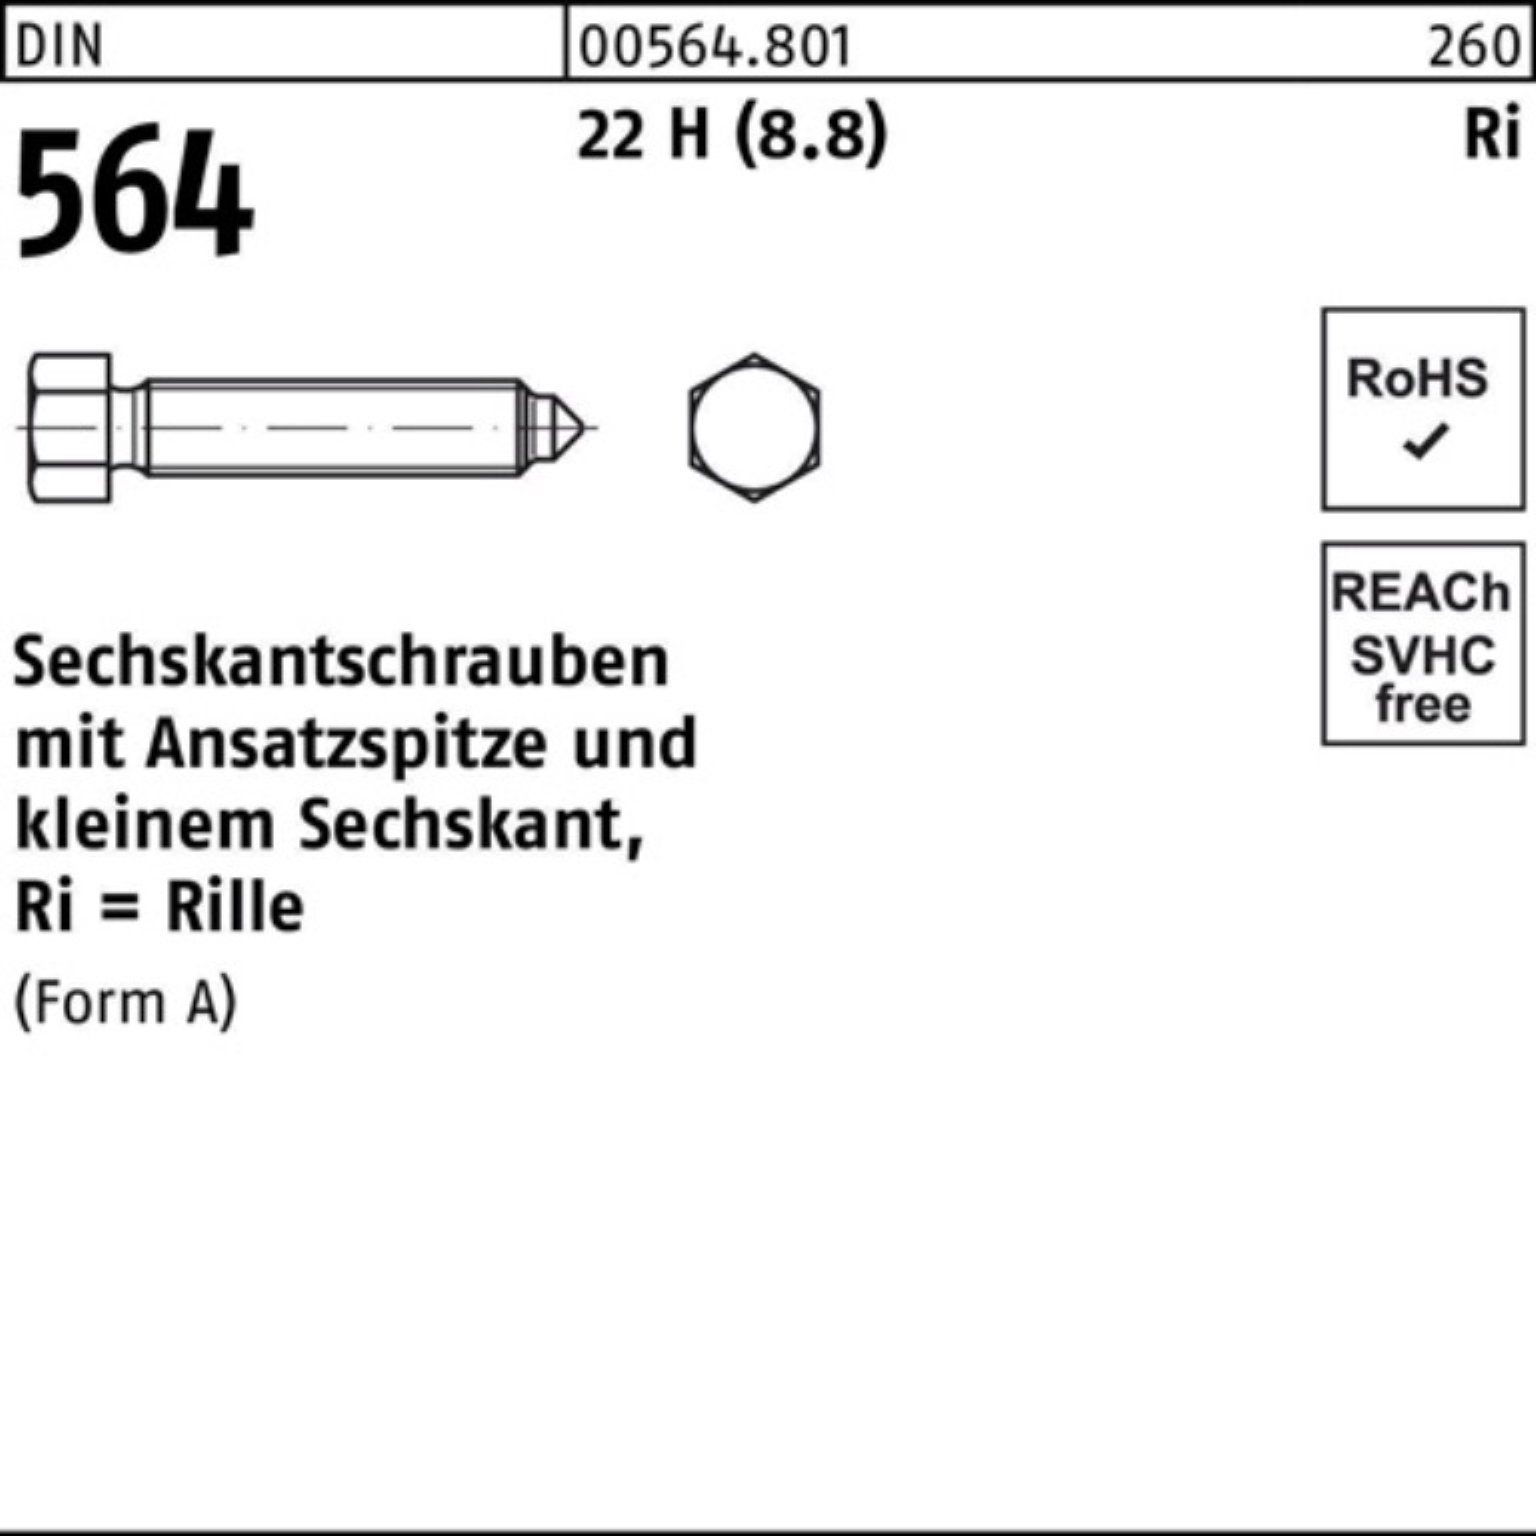 Reyher Sechskantschraube 100er Pack Sechskantschraube DIN 564 Ansatzspitze AM 12x 80 22 H (8.8)